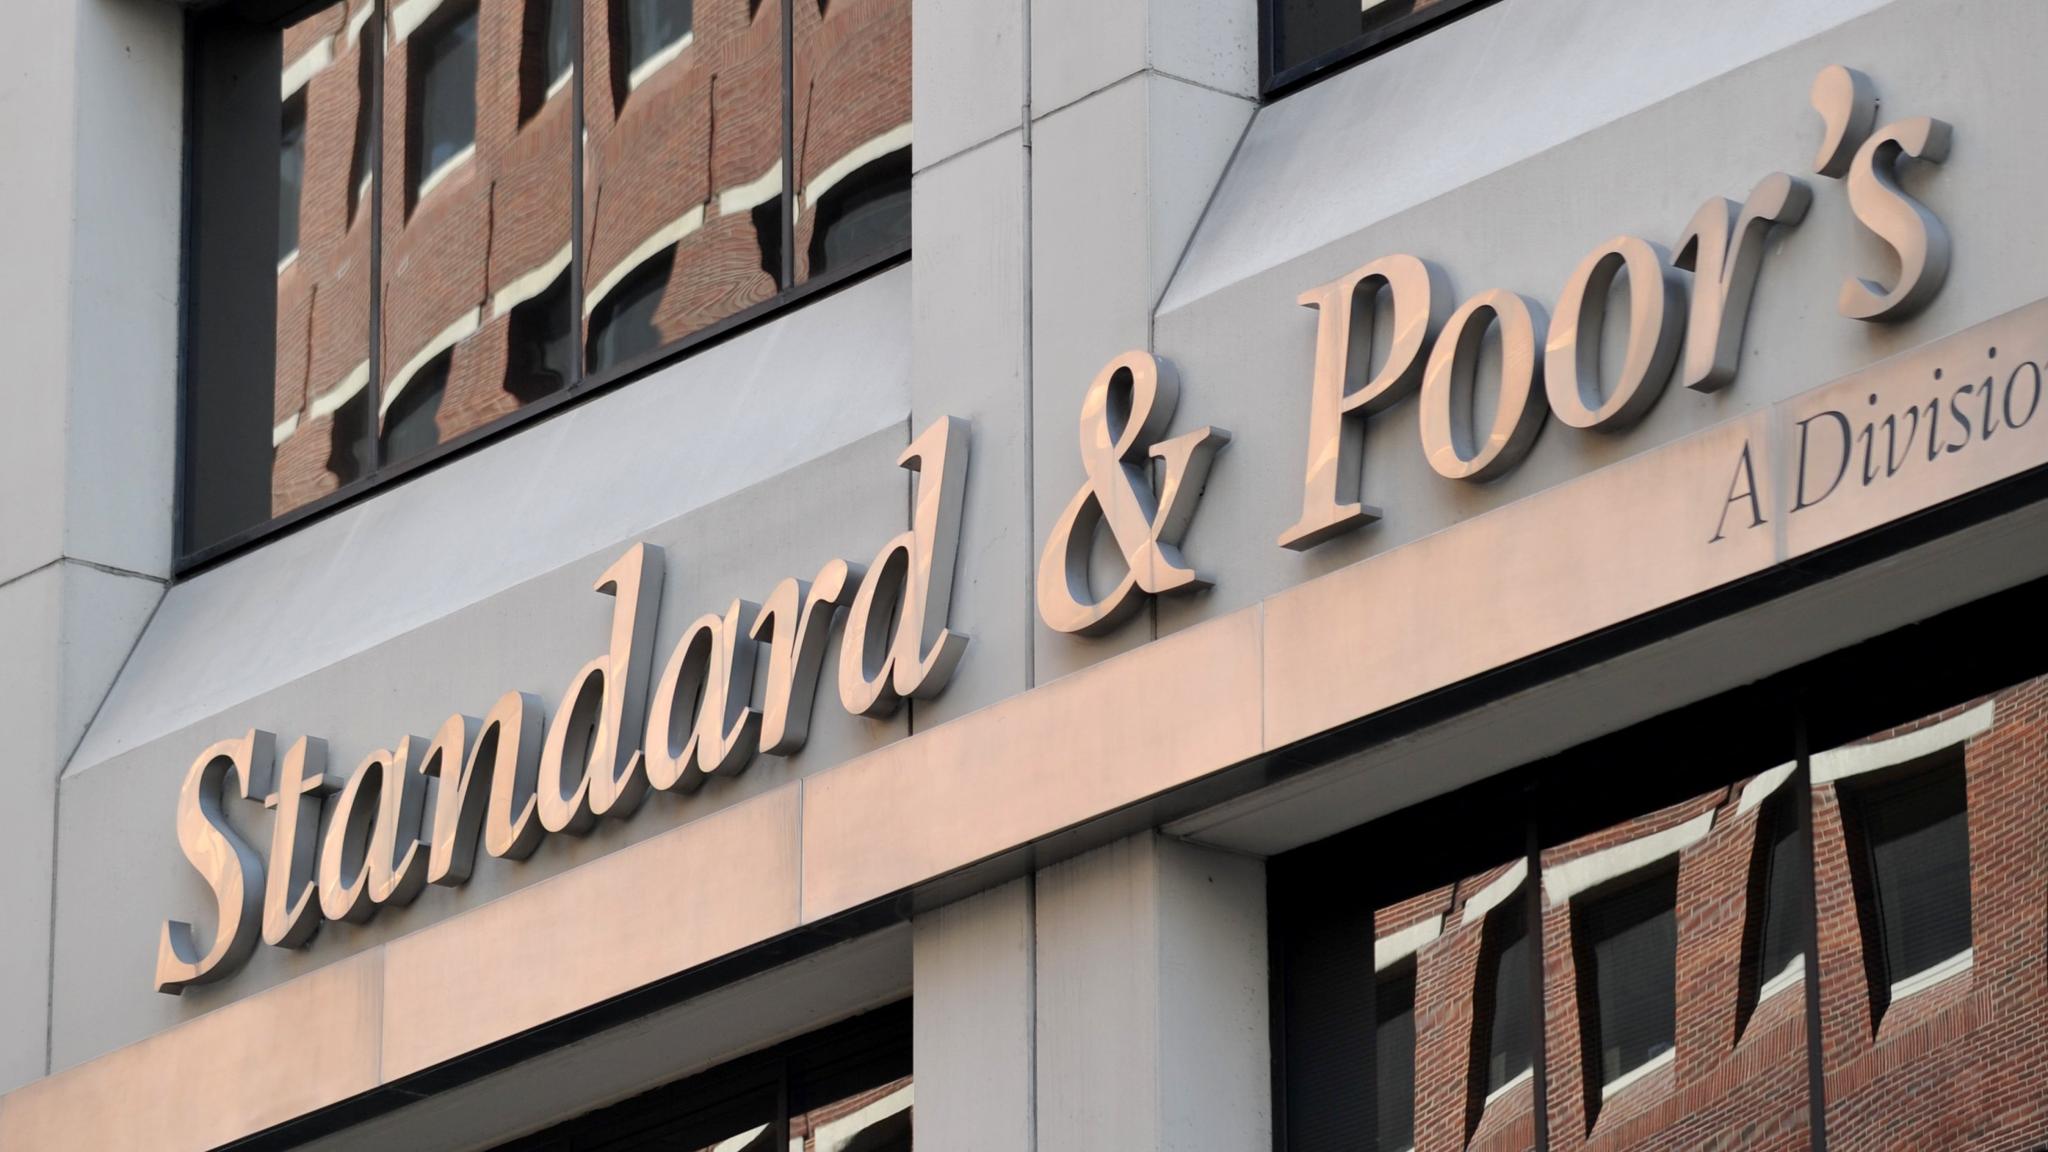 S&P Nedir Standart&Poor’s Türkiye Notu 2020